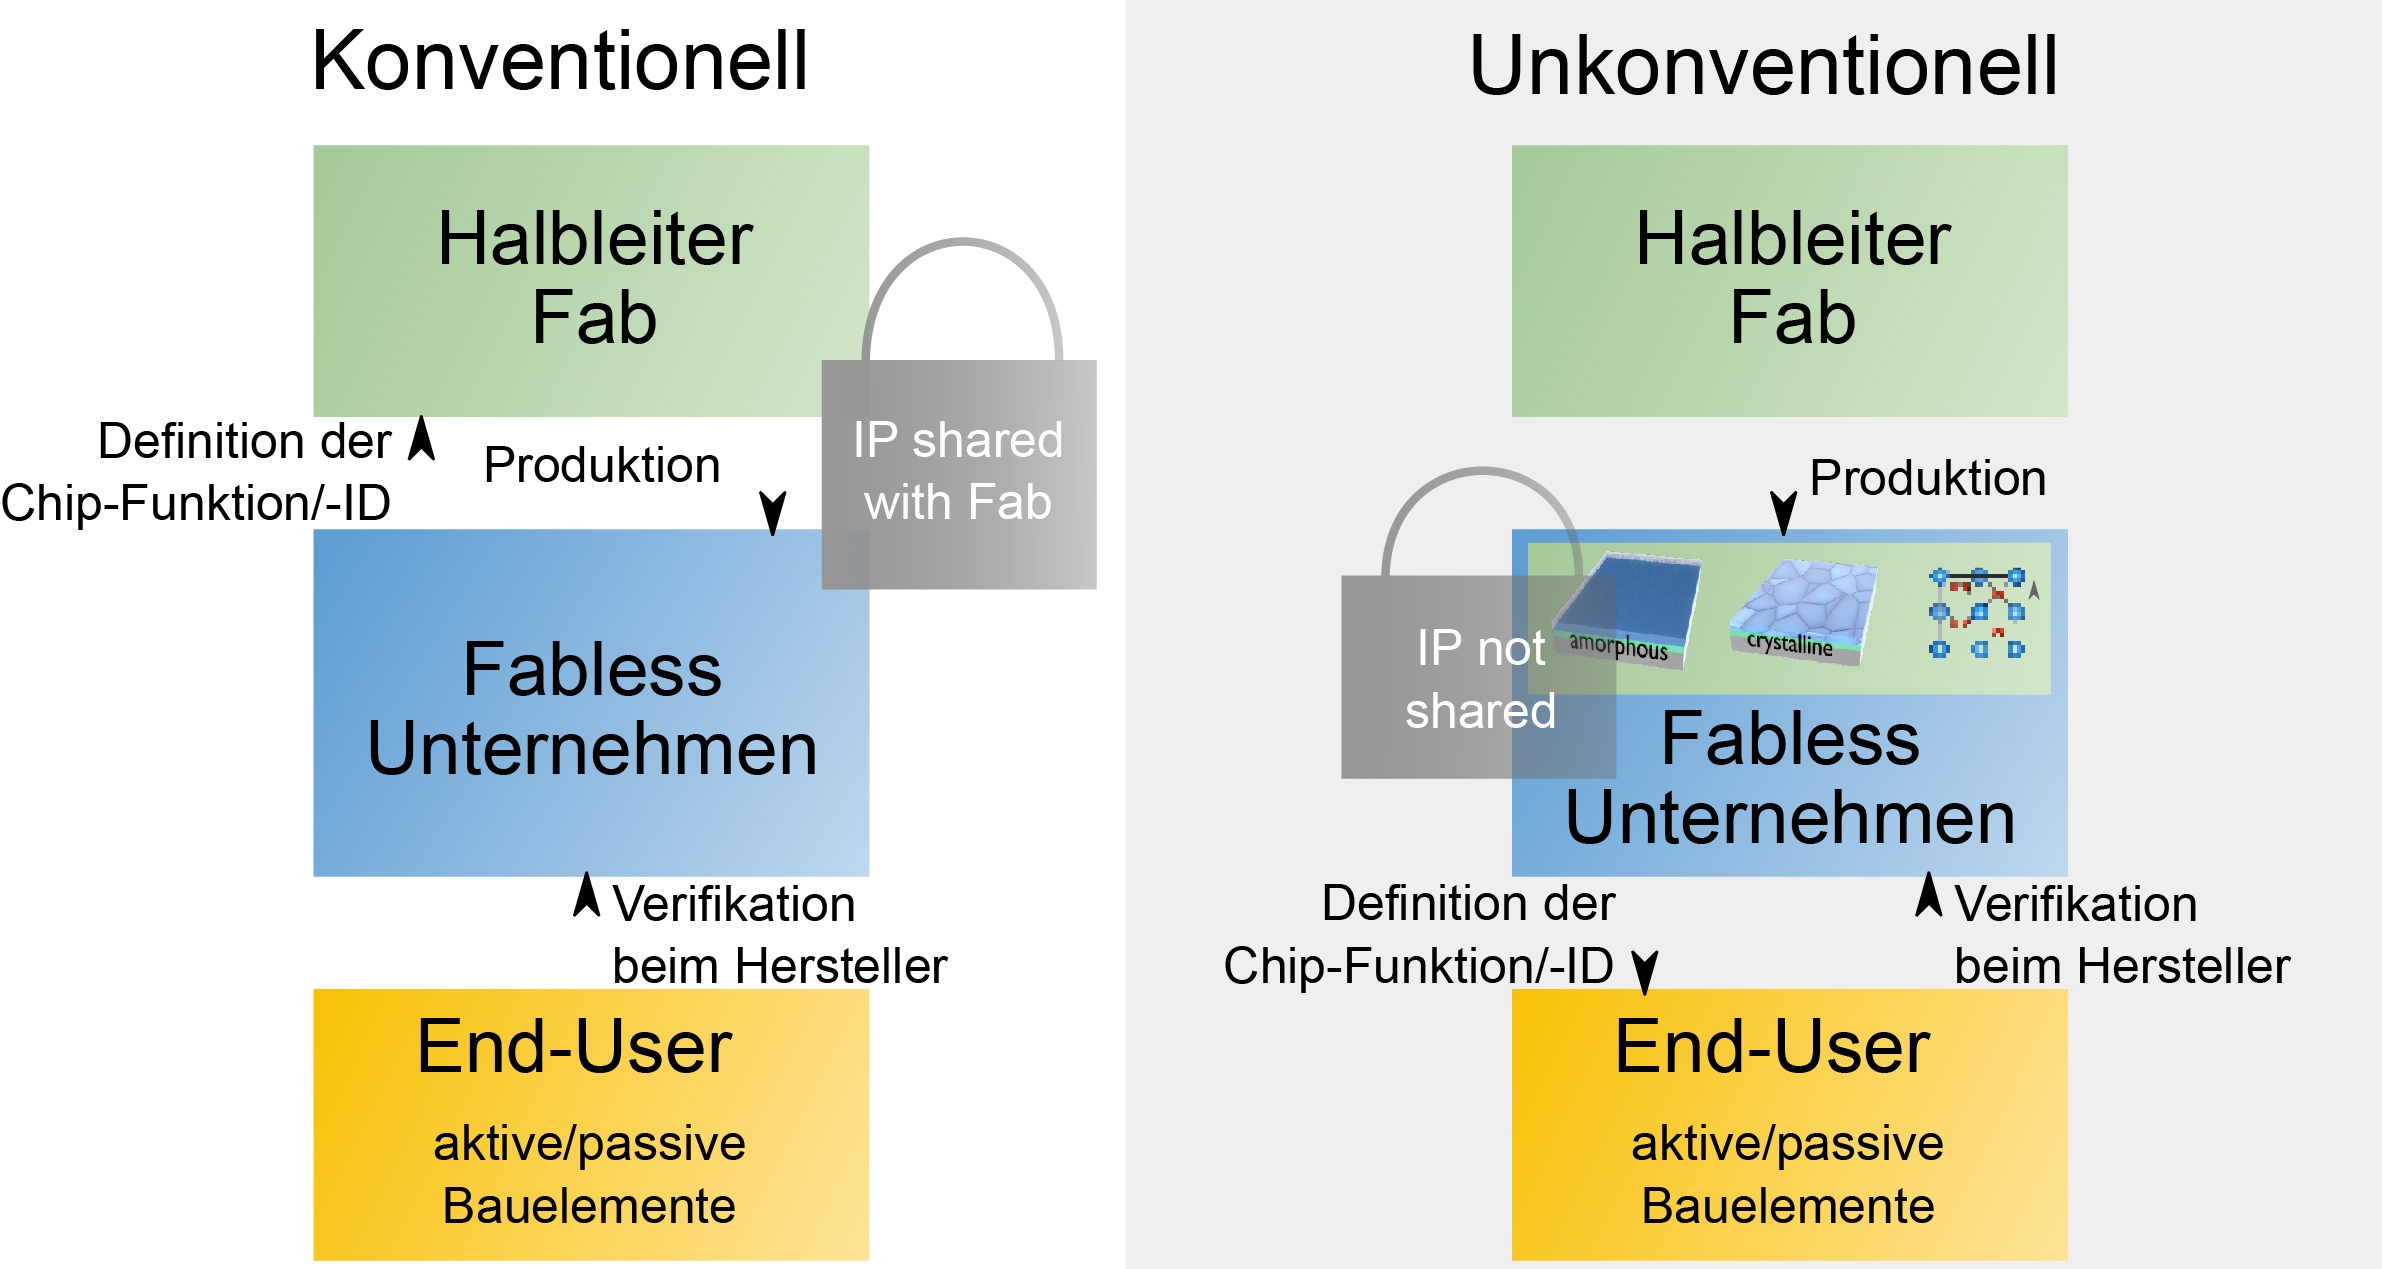 Schematische Darstellung des bisherigen Verfahrens und des neuen im FINK-Projekt vorgeschlagenen Verfahrens für die Verschlüsselung bzw. Funktionsdefinition von integrierten Schaltungen.